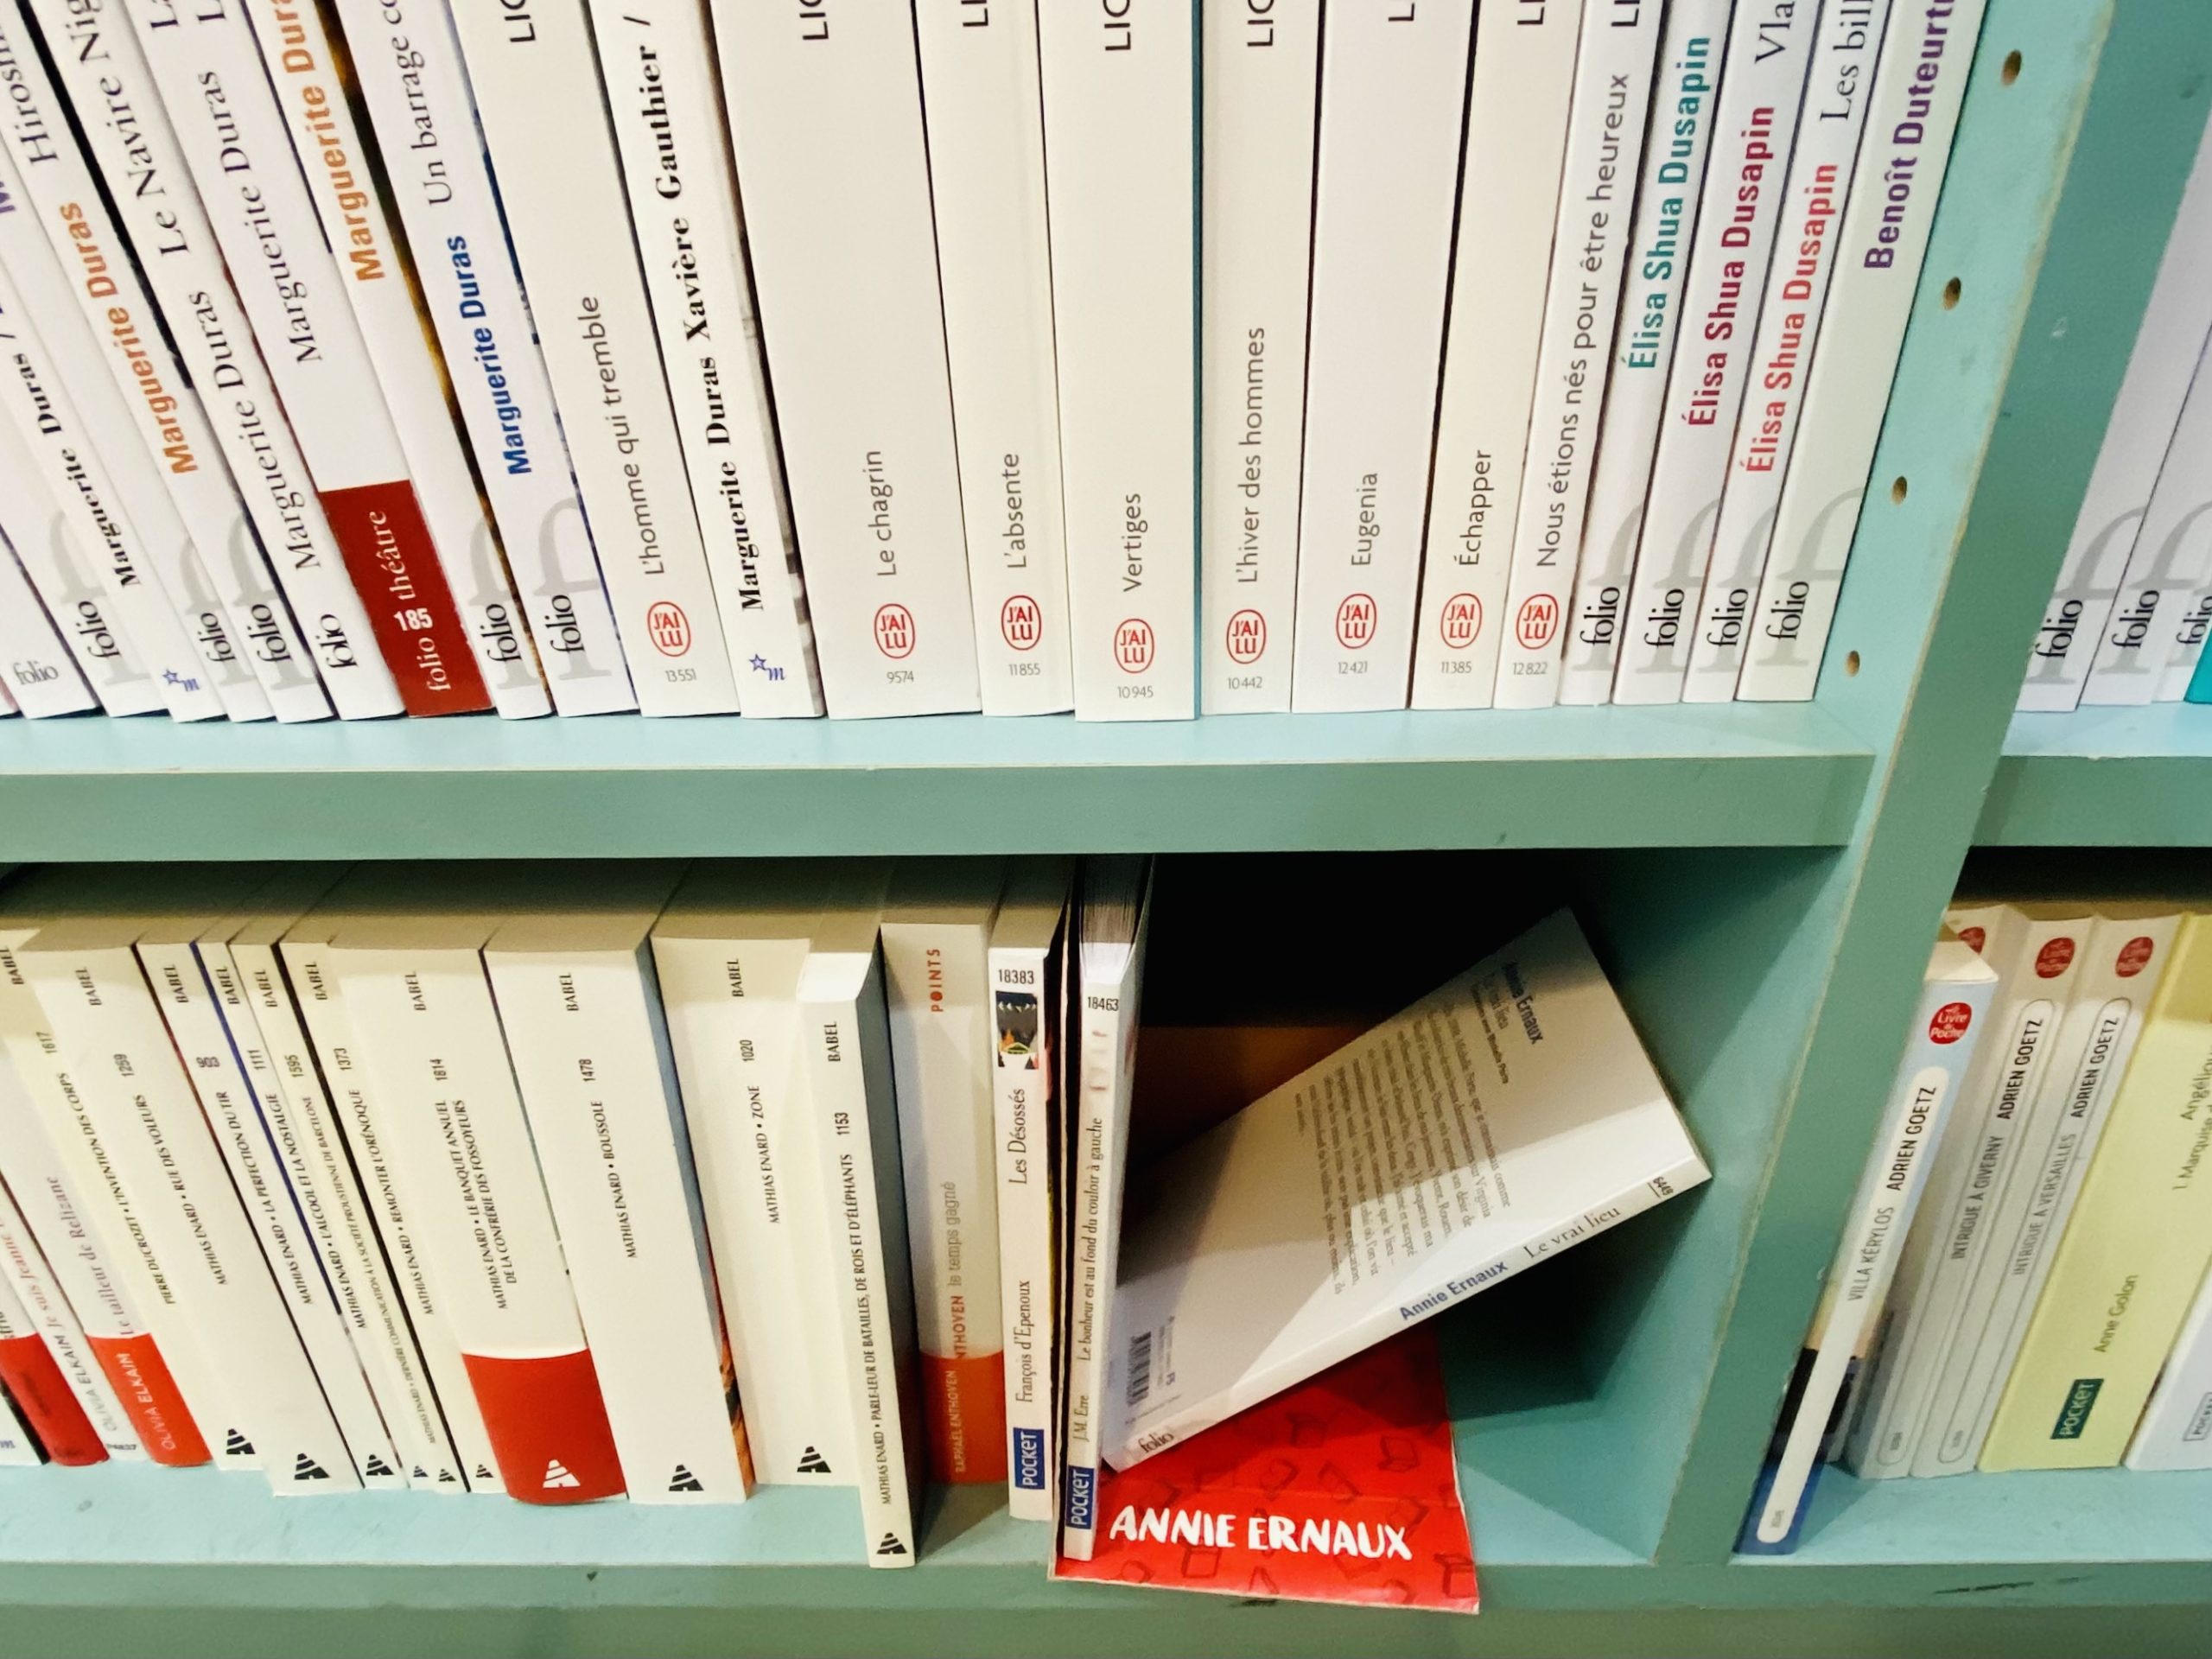 Après le Prix Nobel, les livres d’Annie Ernaux en rupture de stocks